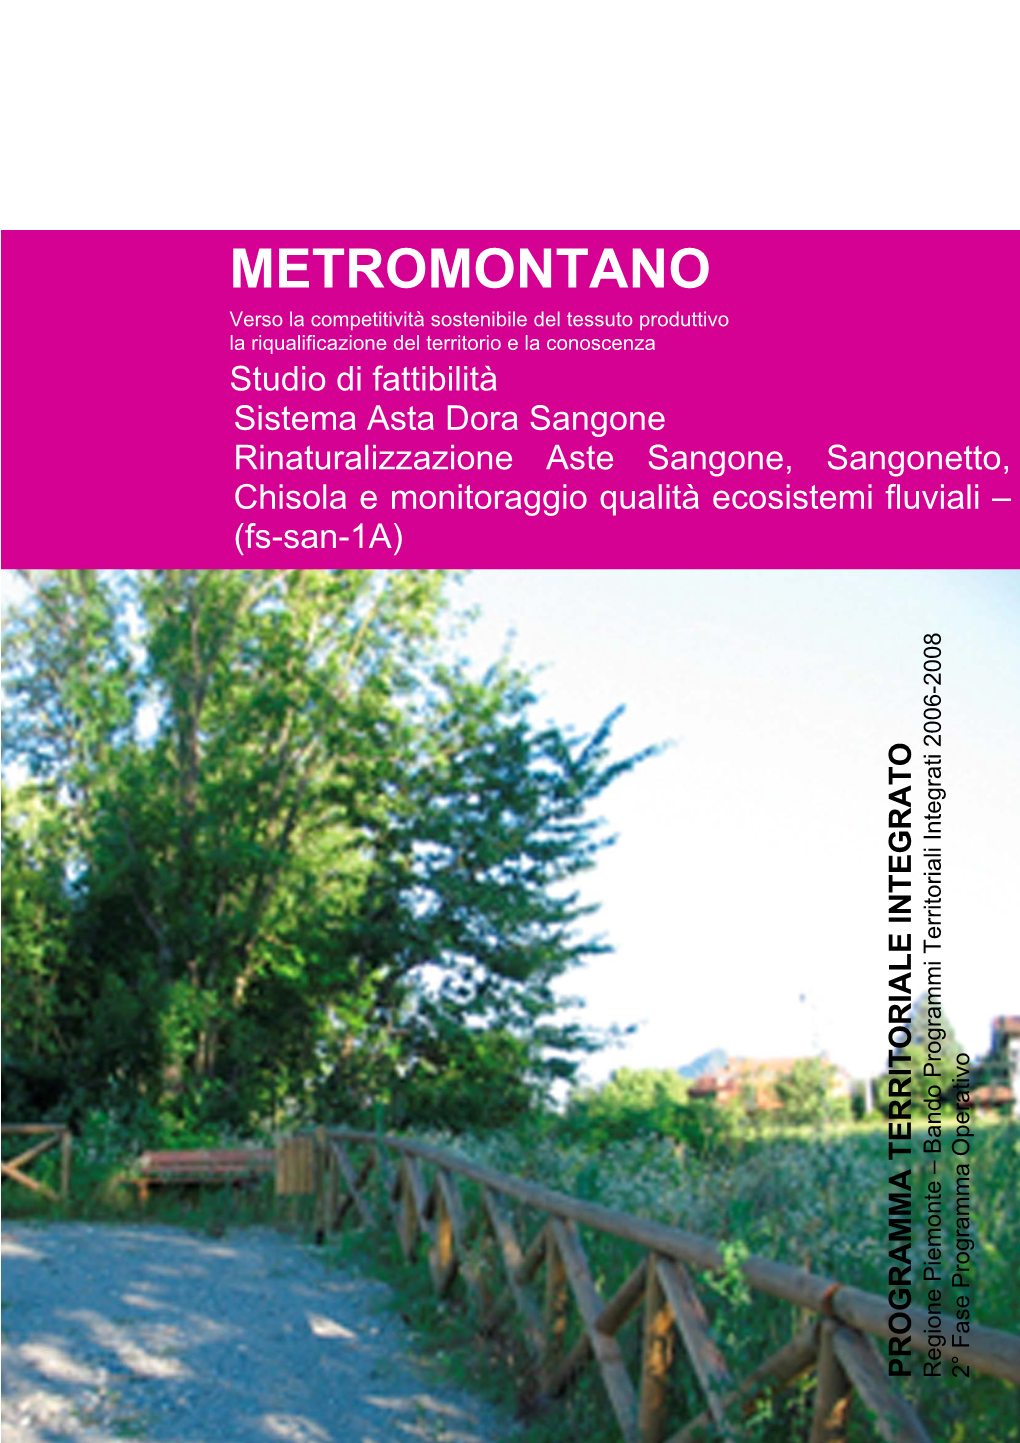 Fs-San-1A) Territoriali Integrati 2006-2008 2° Fase Programma Operativo PROGRAMMA TERRITORIALE INTEGRATO Regione Piemonte – Bando Programmi